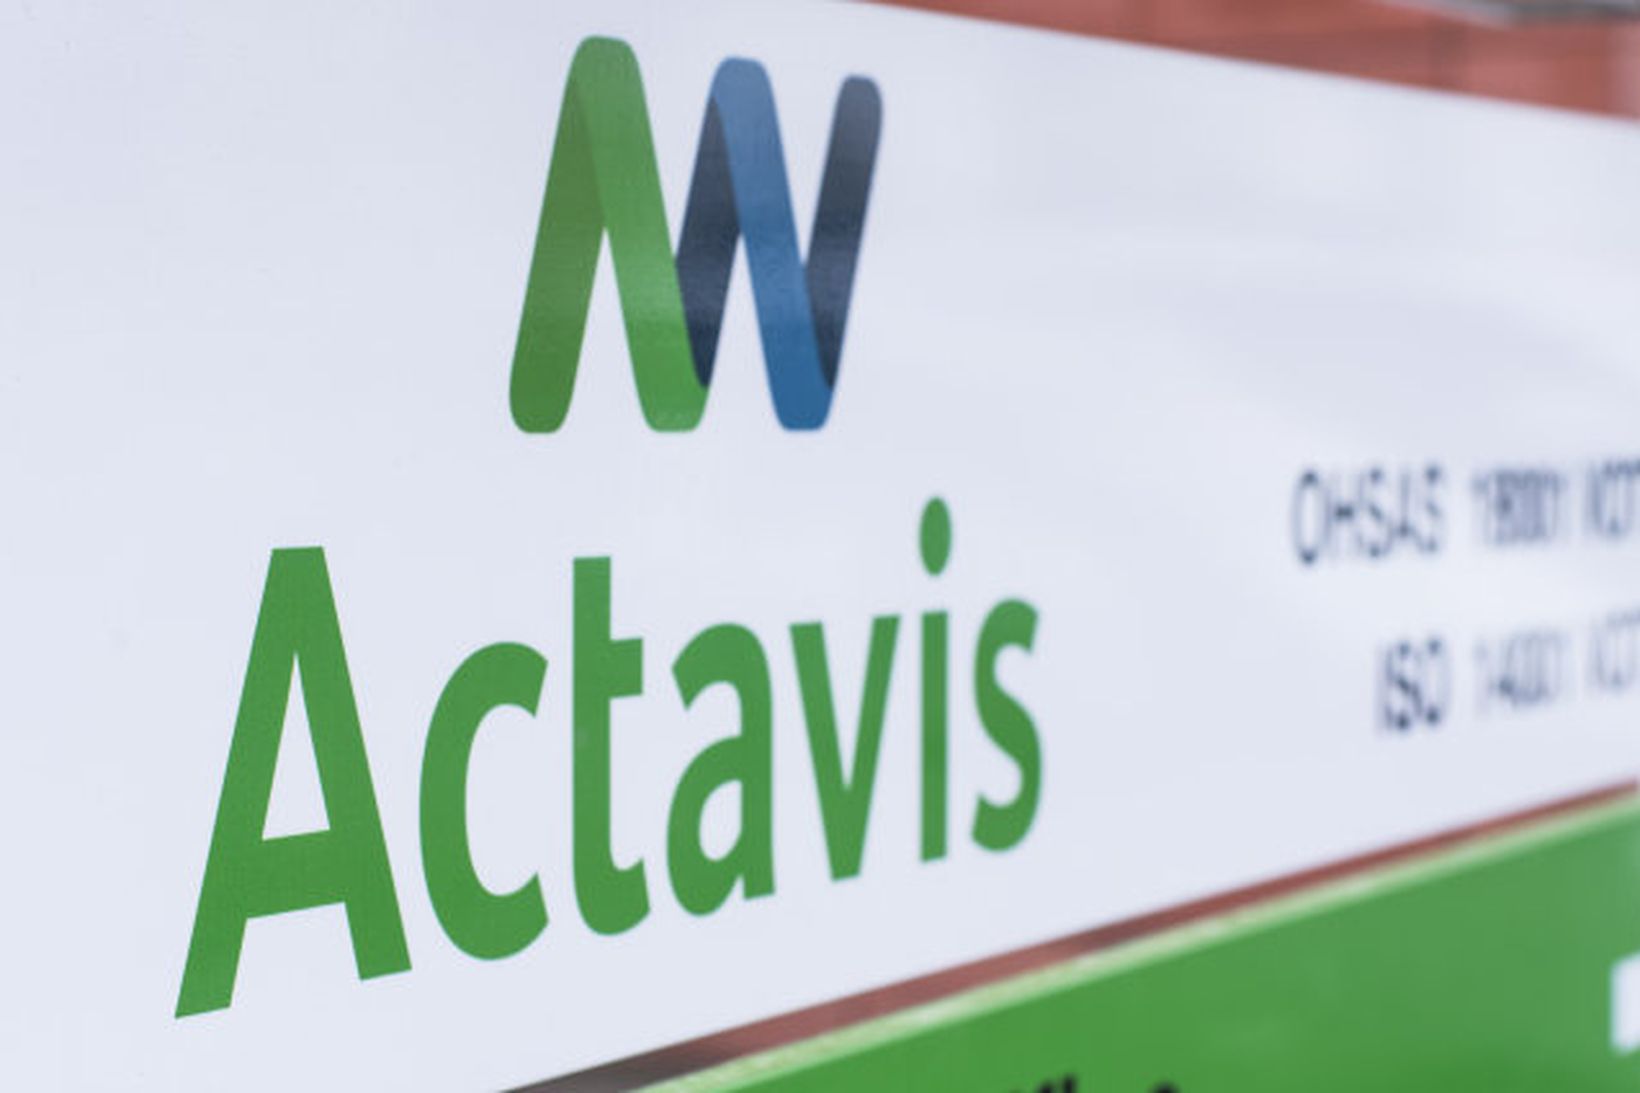 Actavis varð til við sameiningu Watson Pharmaceuticals og Actavis